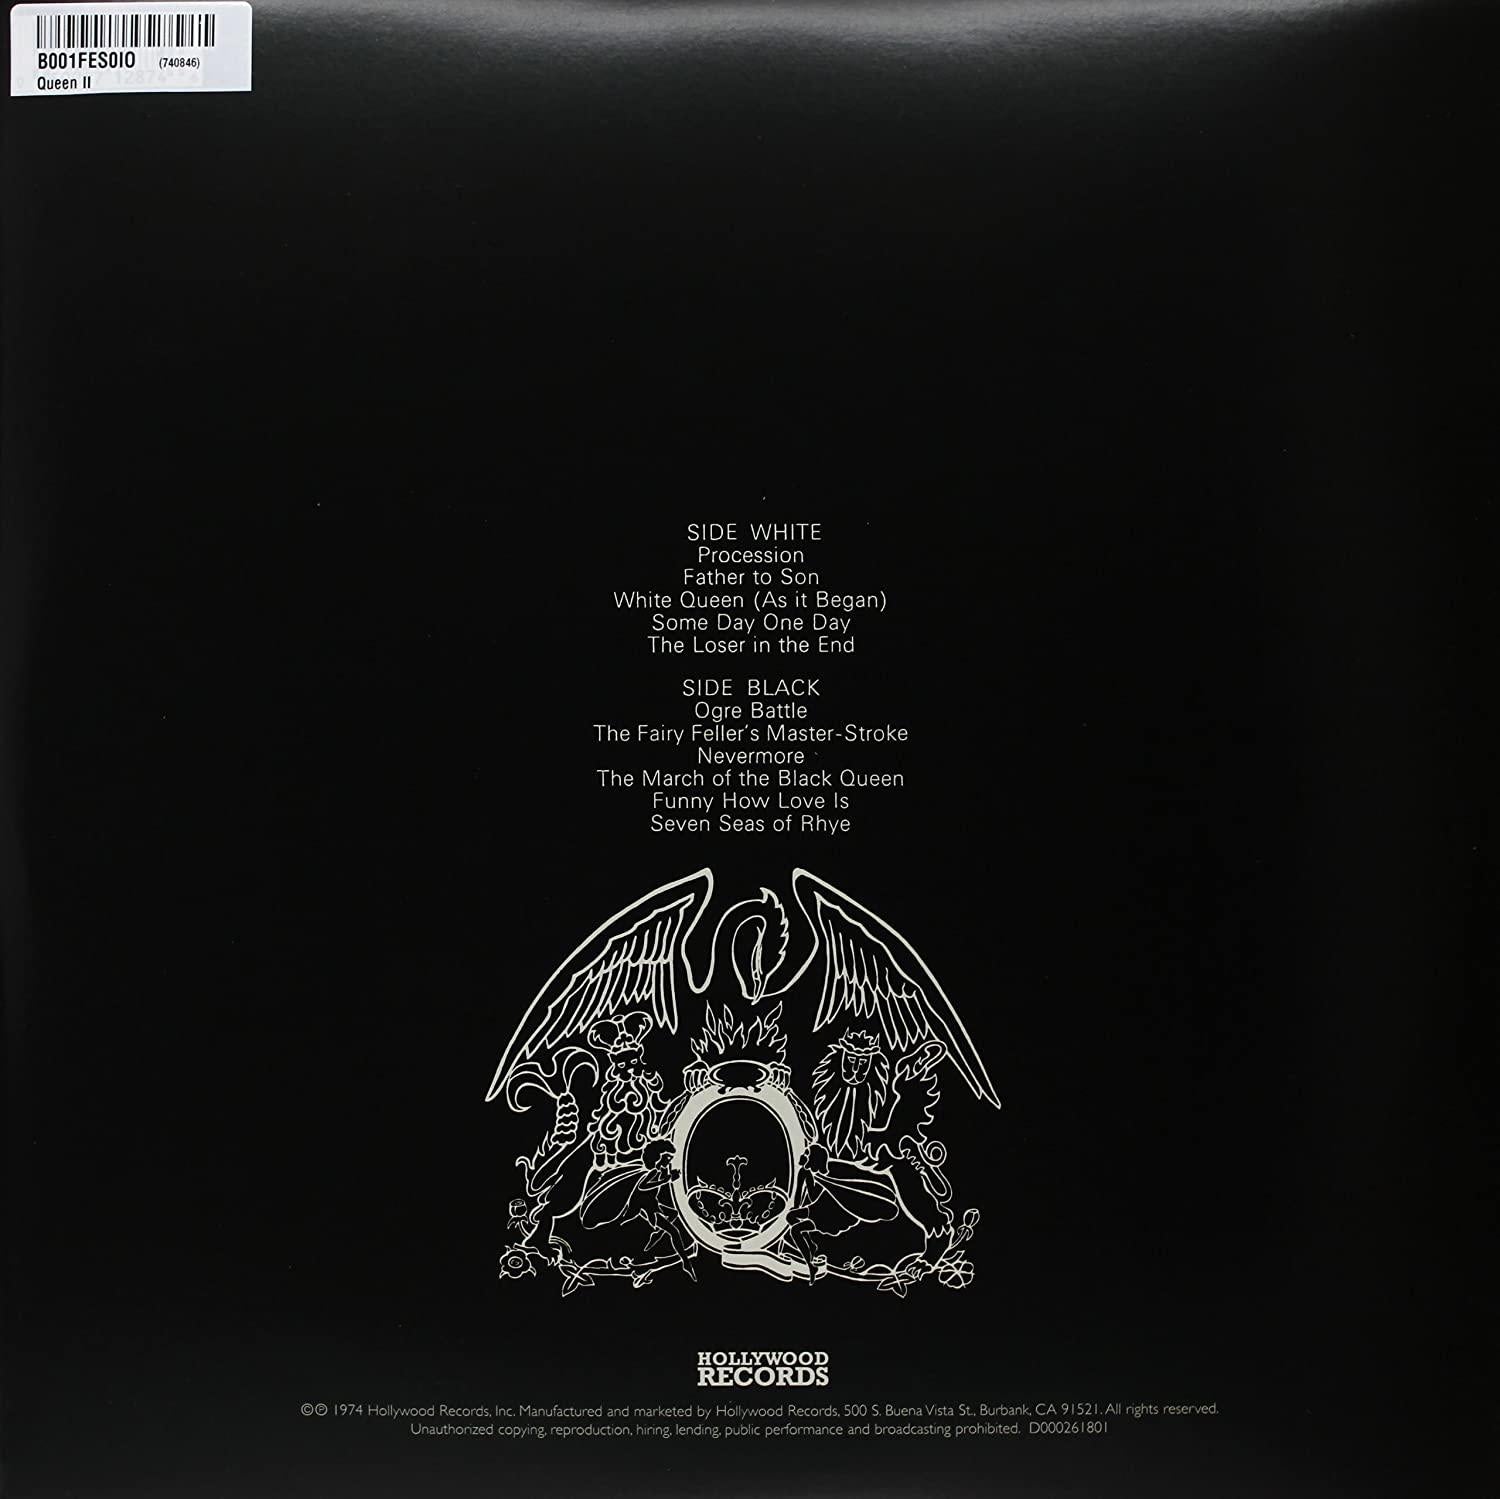 Queen - Queen II (Remastered, Gatefold, 180 Gram) (LP) - Joco Records